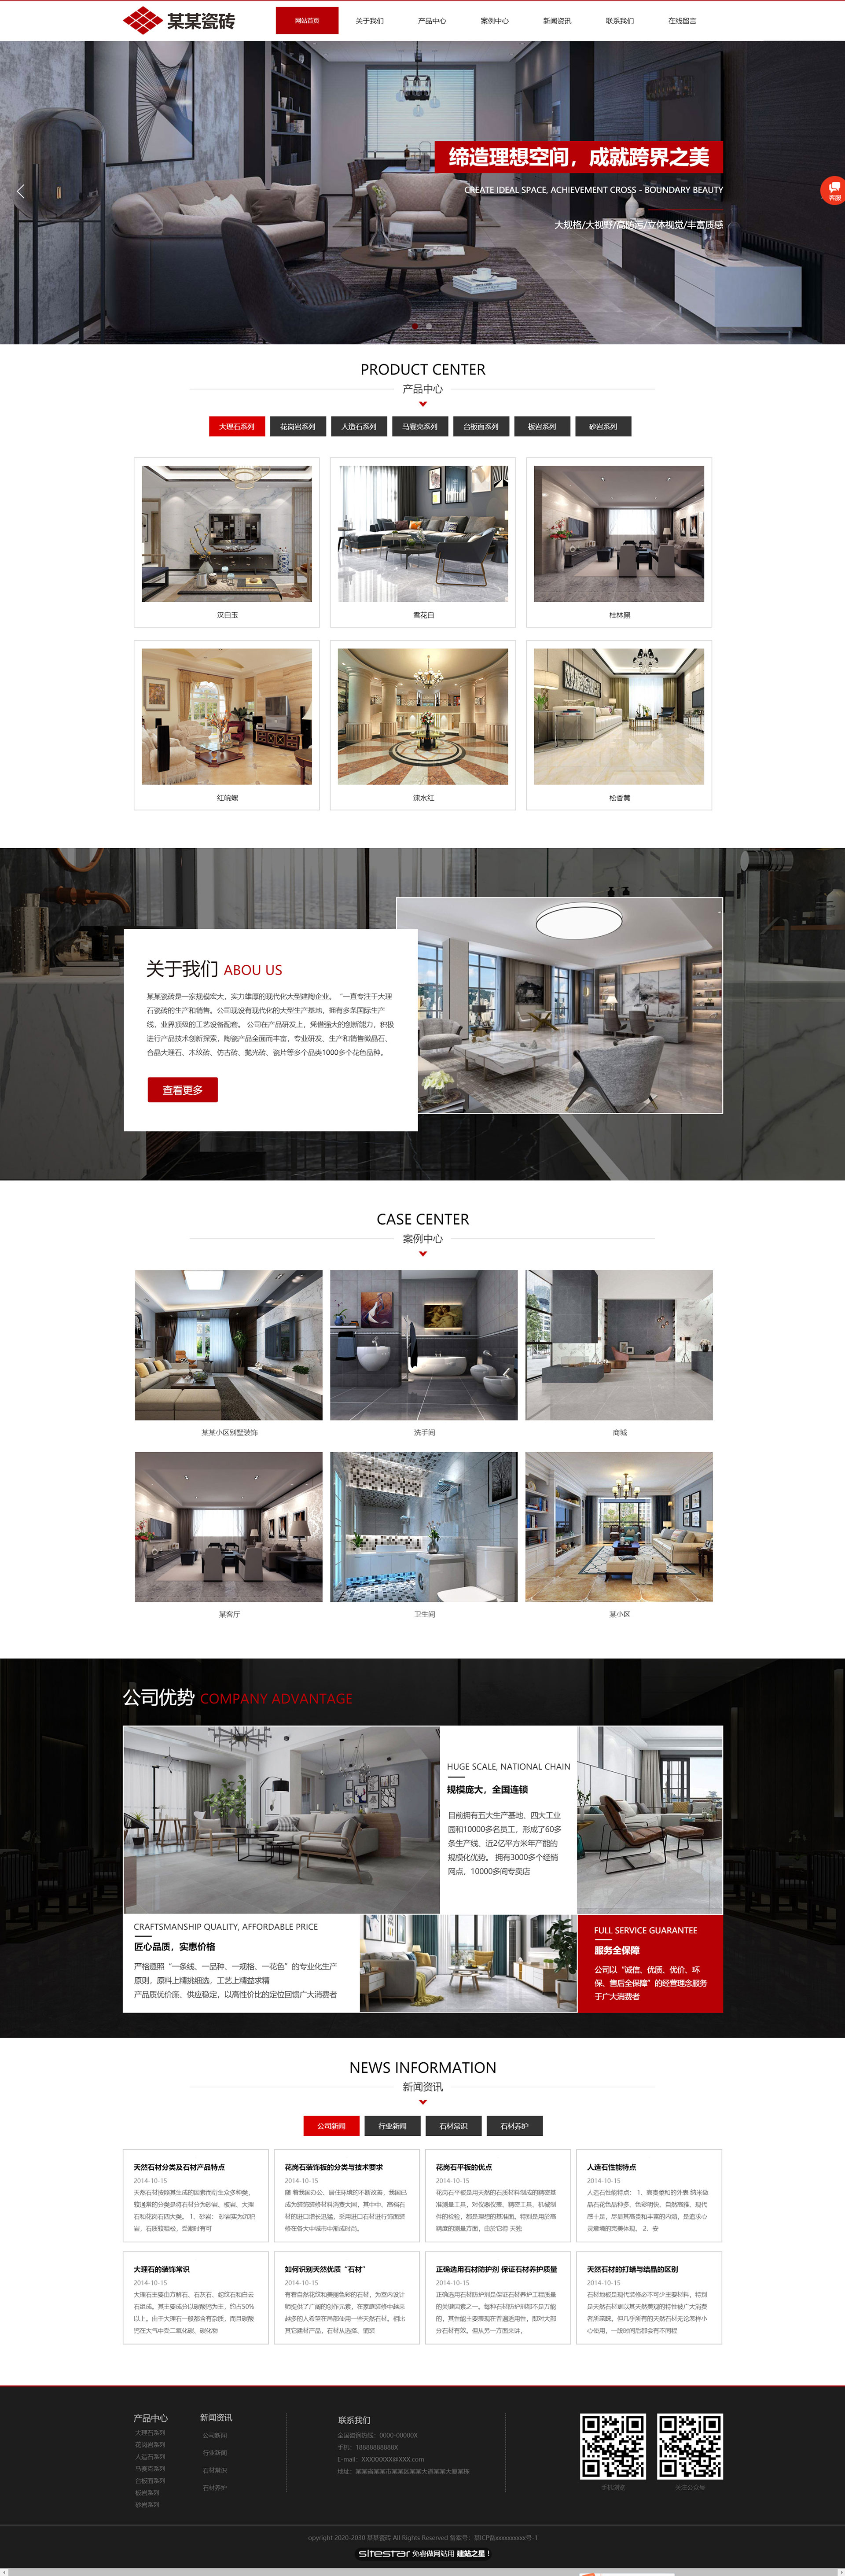 企业网站精美模板-architecture-1128639